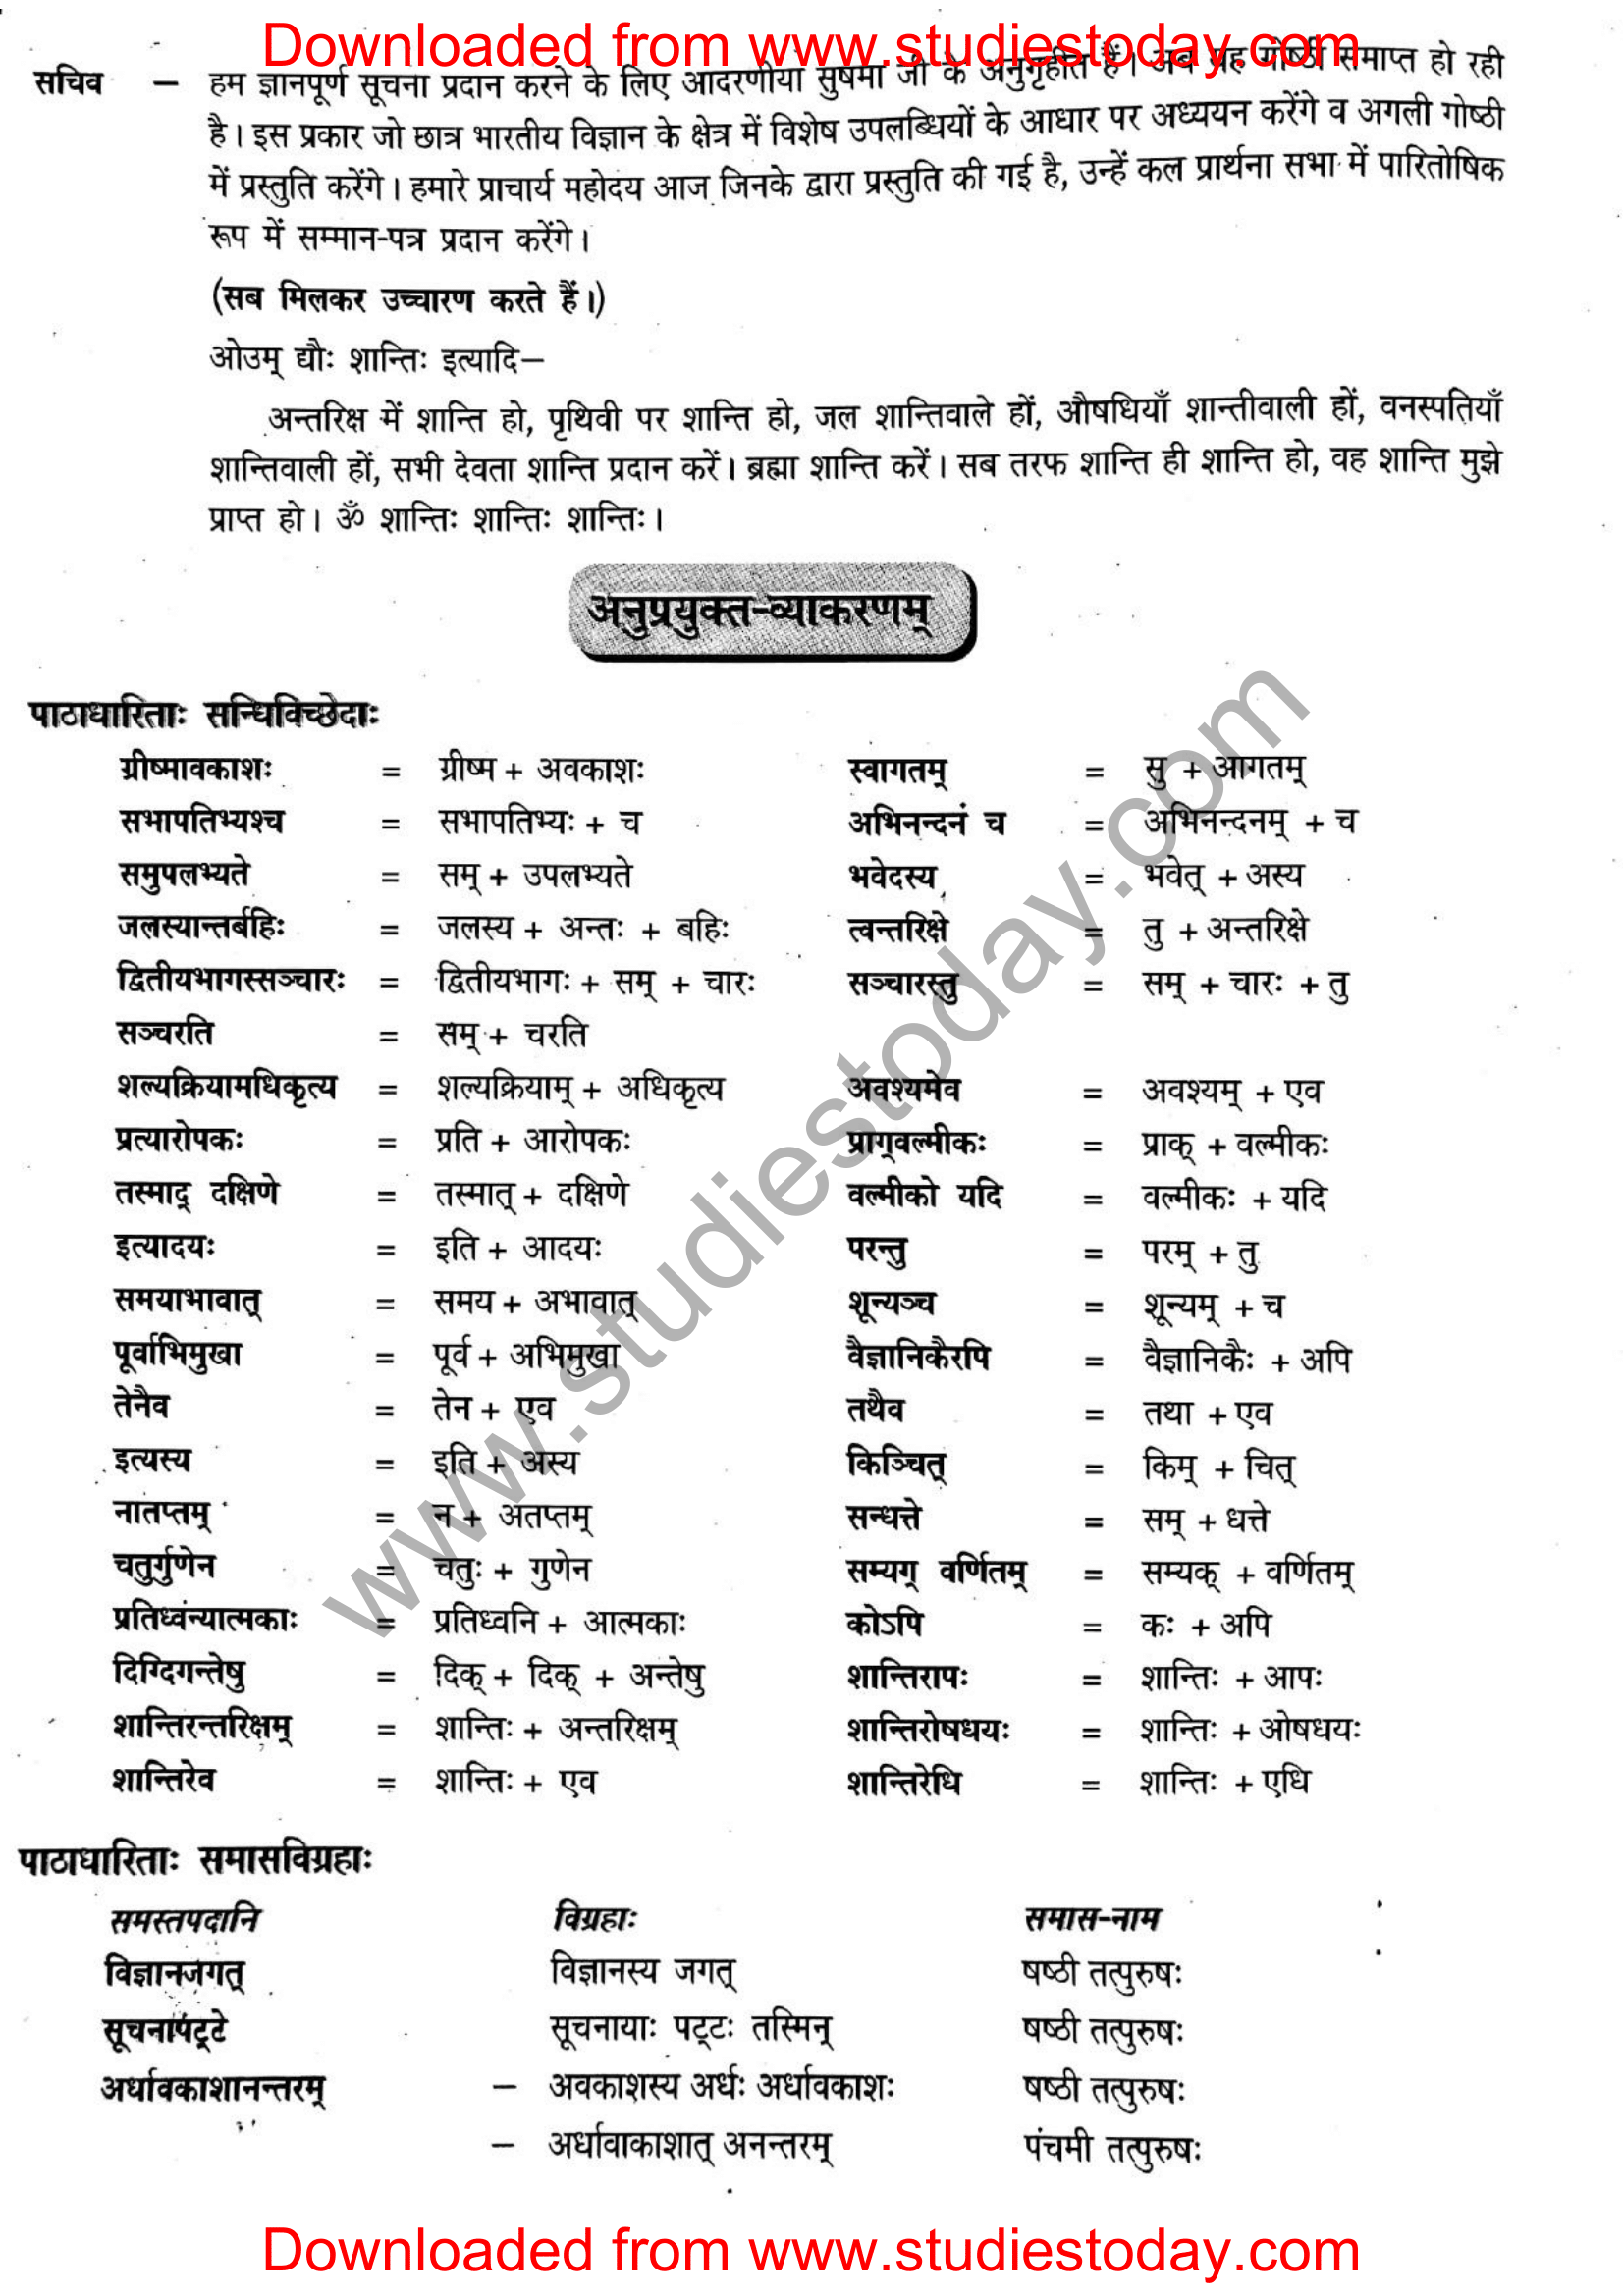 ncert-solutions-class-12-sanskrit-ritikia-chapter-8-06